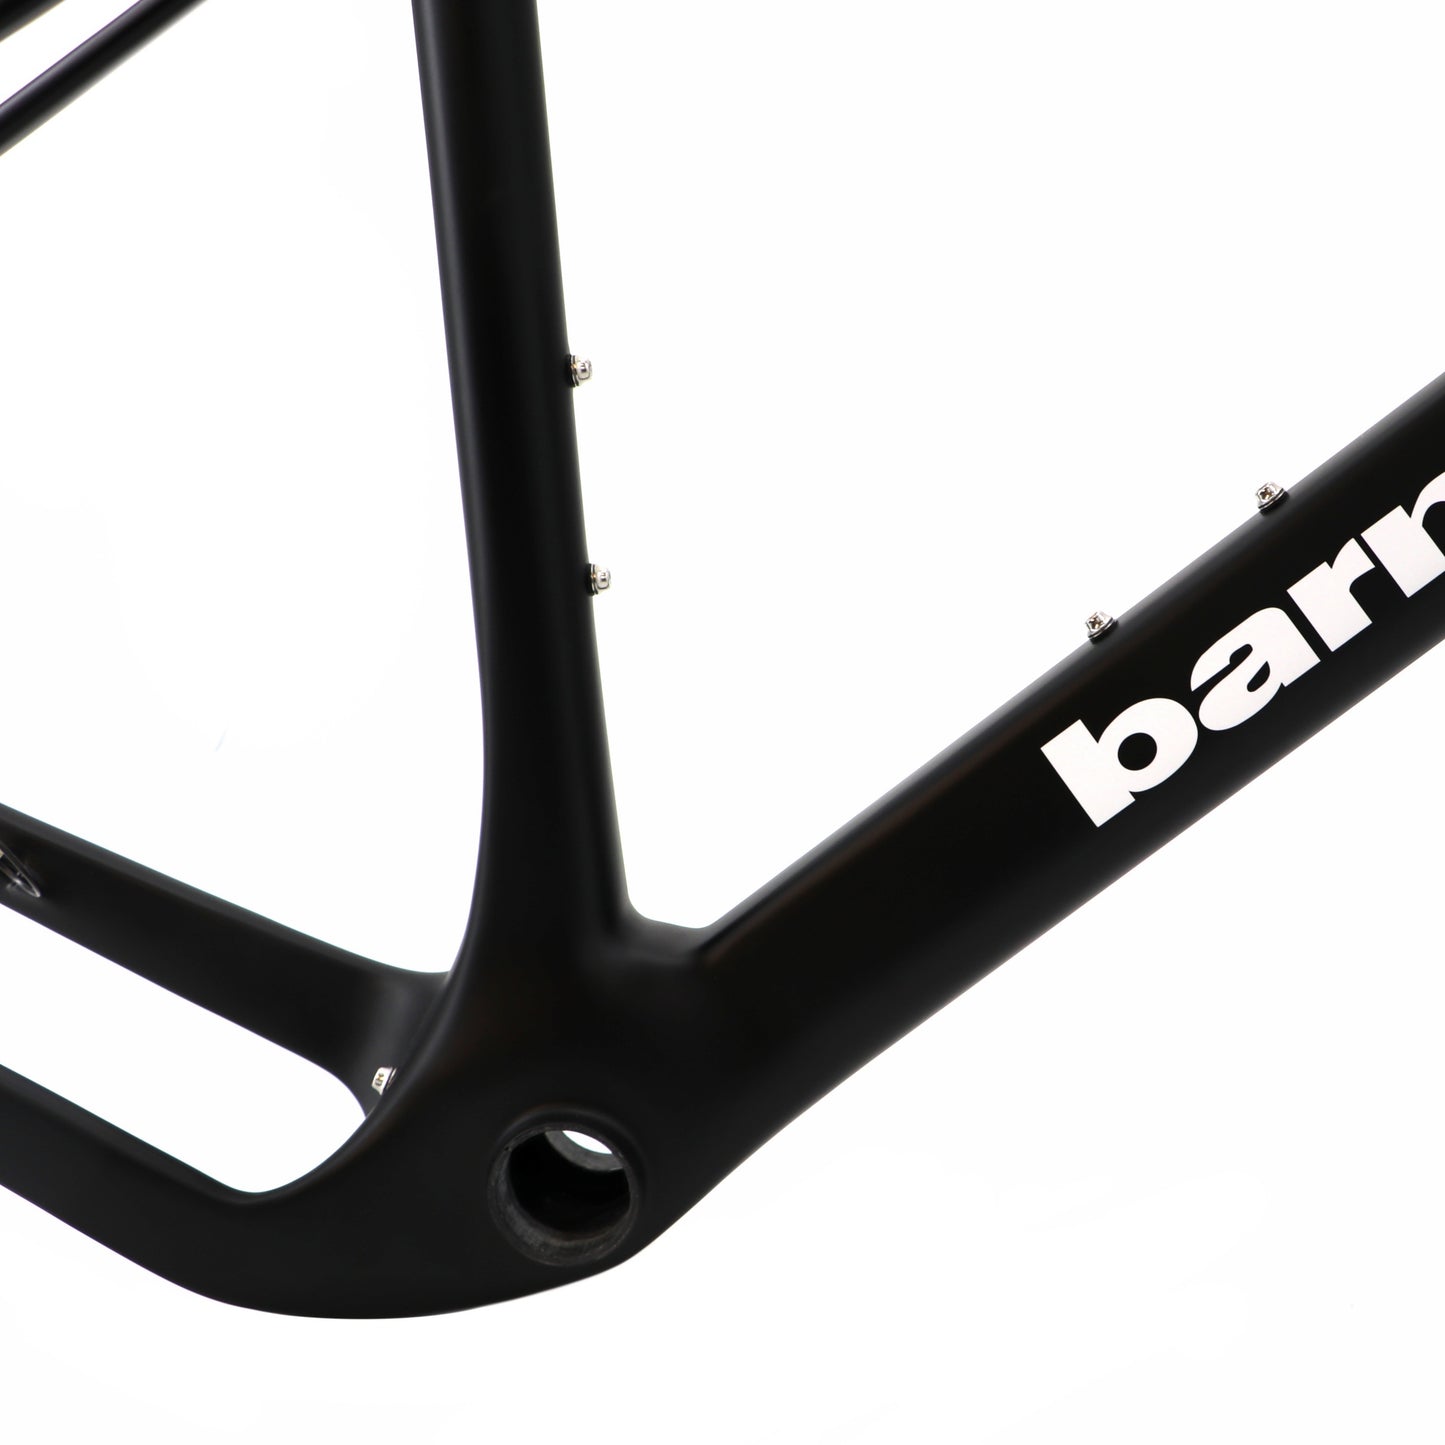 BGC-01 Carbon Gravel Bike Frame, Black